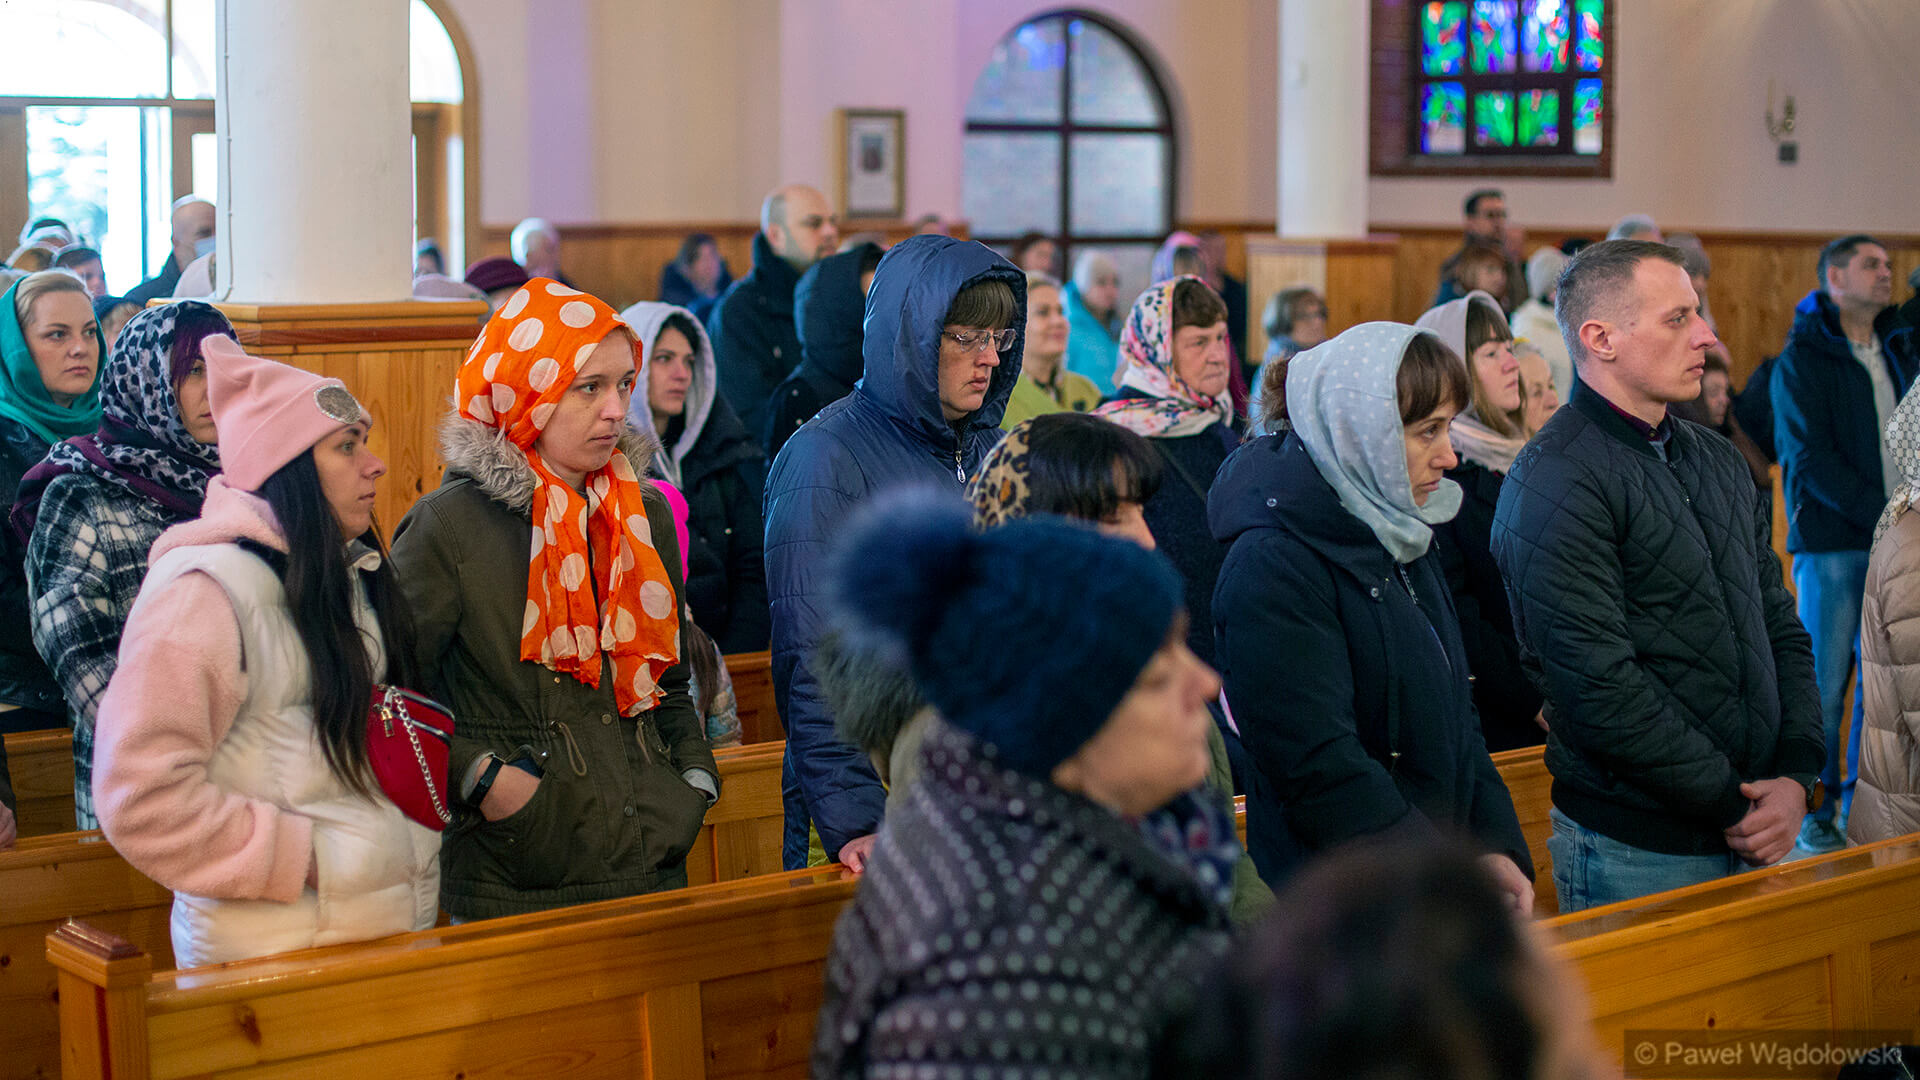 W łomżyńskim kościele zorganizowano prawosławne nabożeństwo, 10.04.2022, fot. Paweł Wądołowski